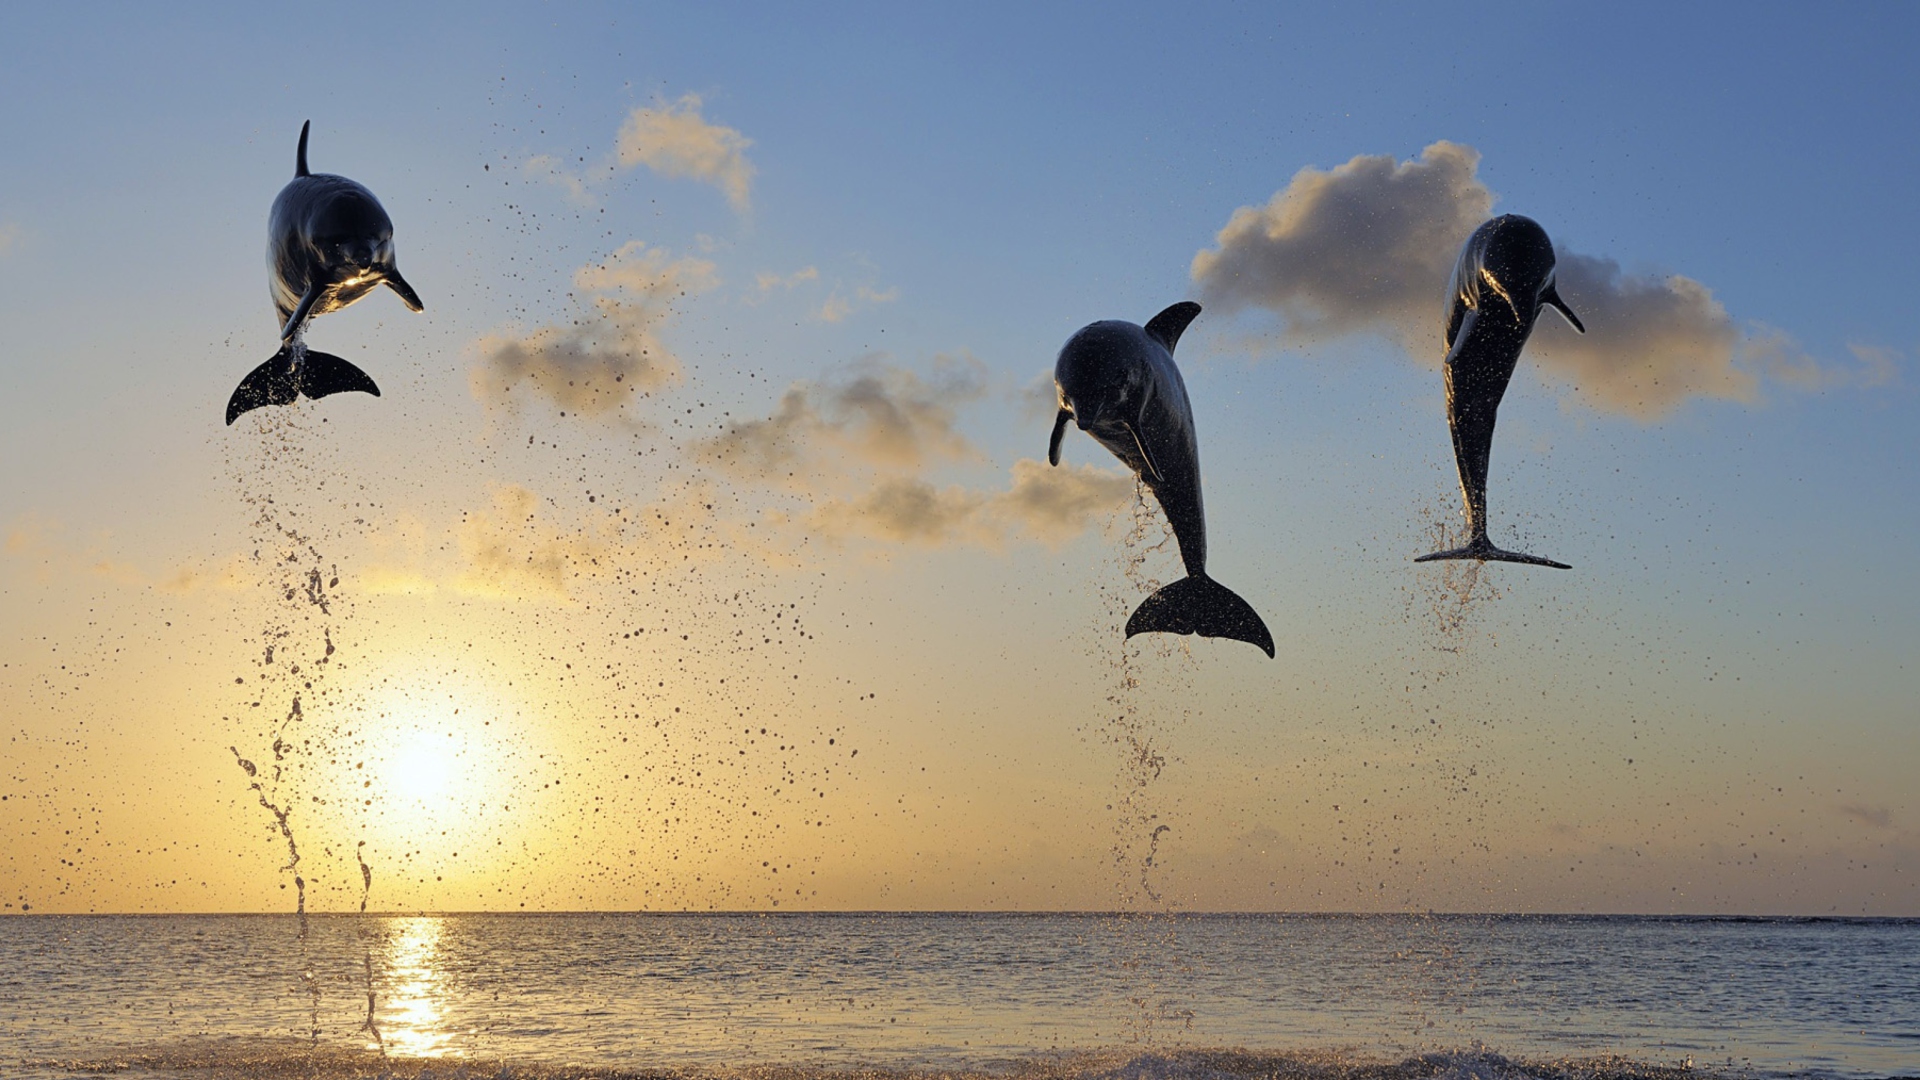 Обои Dolphins Jumping 1920x1080